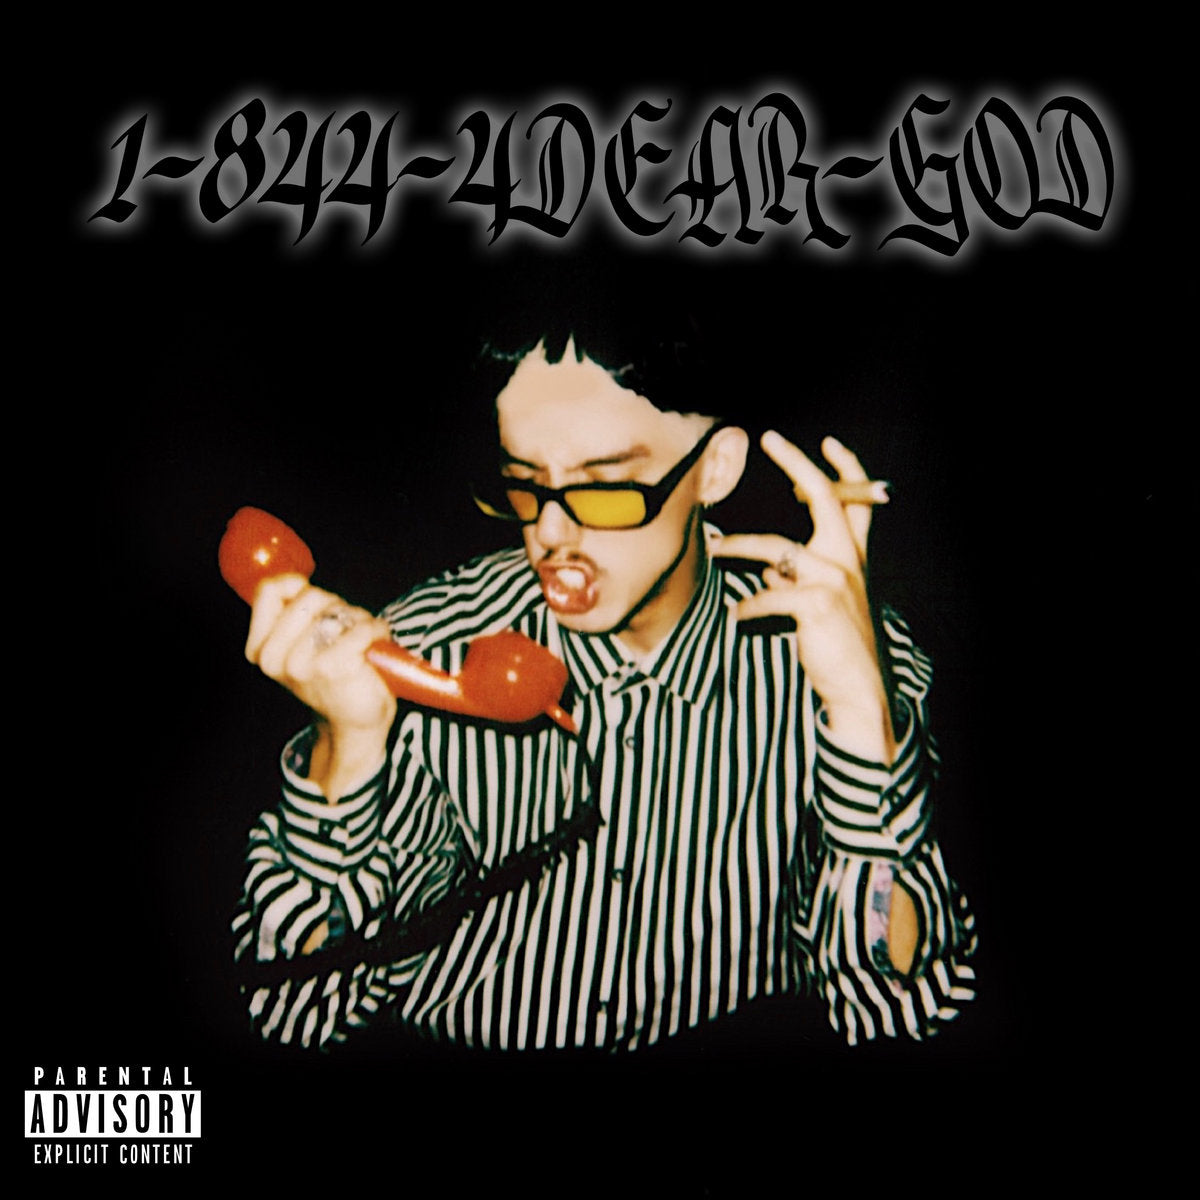 1-844-4DEAR-GOD EP